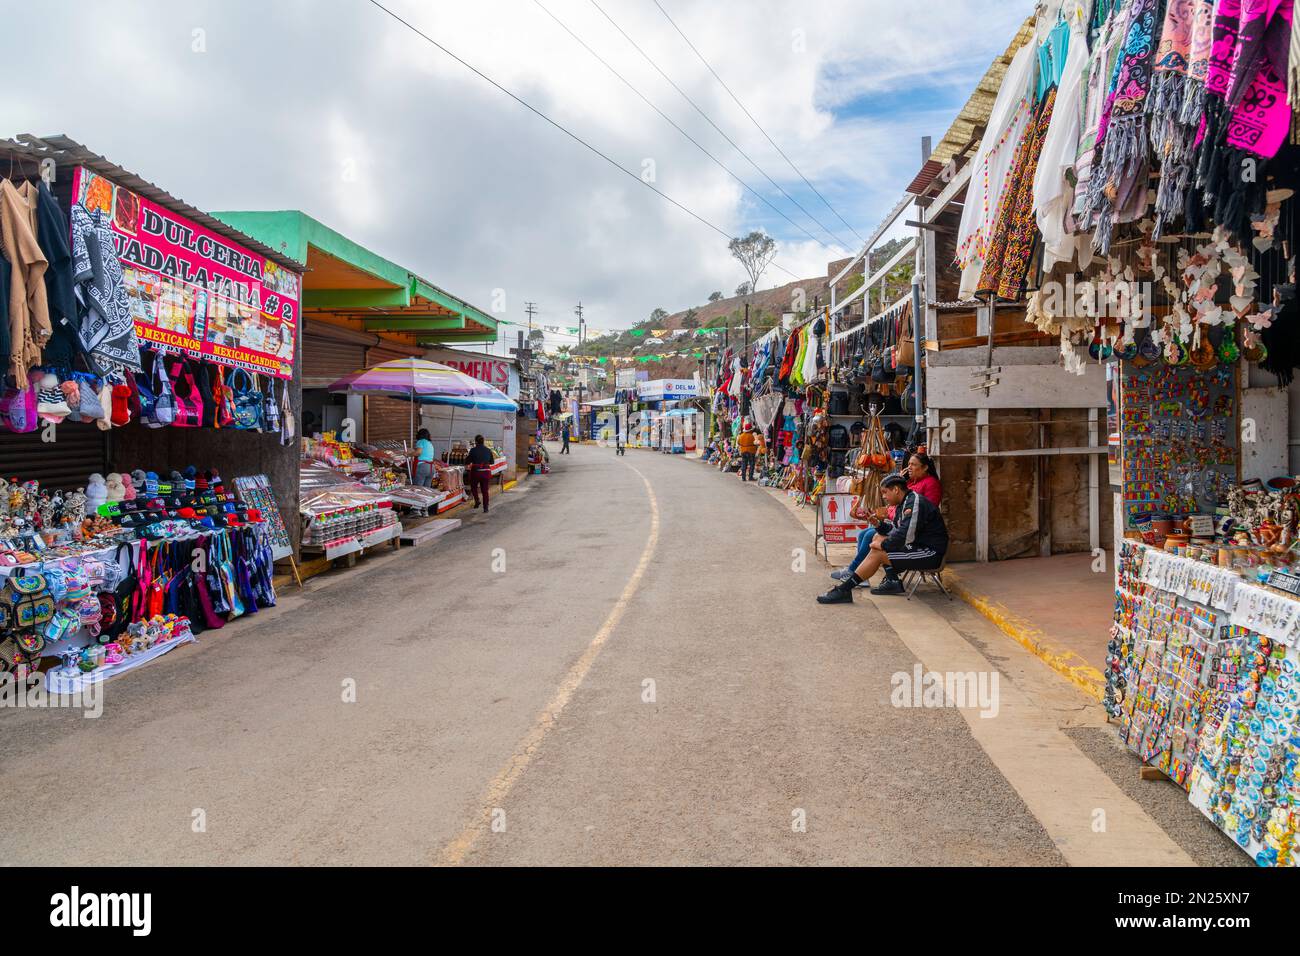 Der Touristenmarkt La Bufadora mit Geschäften im Freien bietet Souvenirs und Speisen auf dem Weg zum La Bufadora Blowhole in Punta Banda, Mexiko. Stockfoto